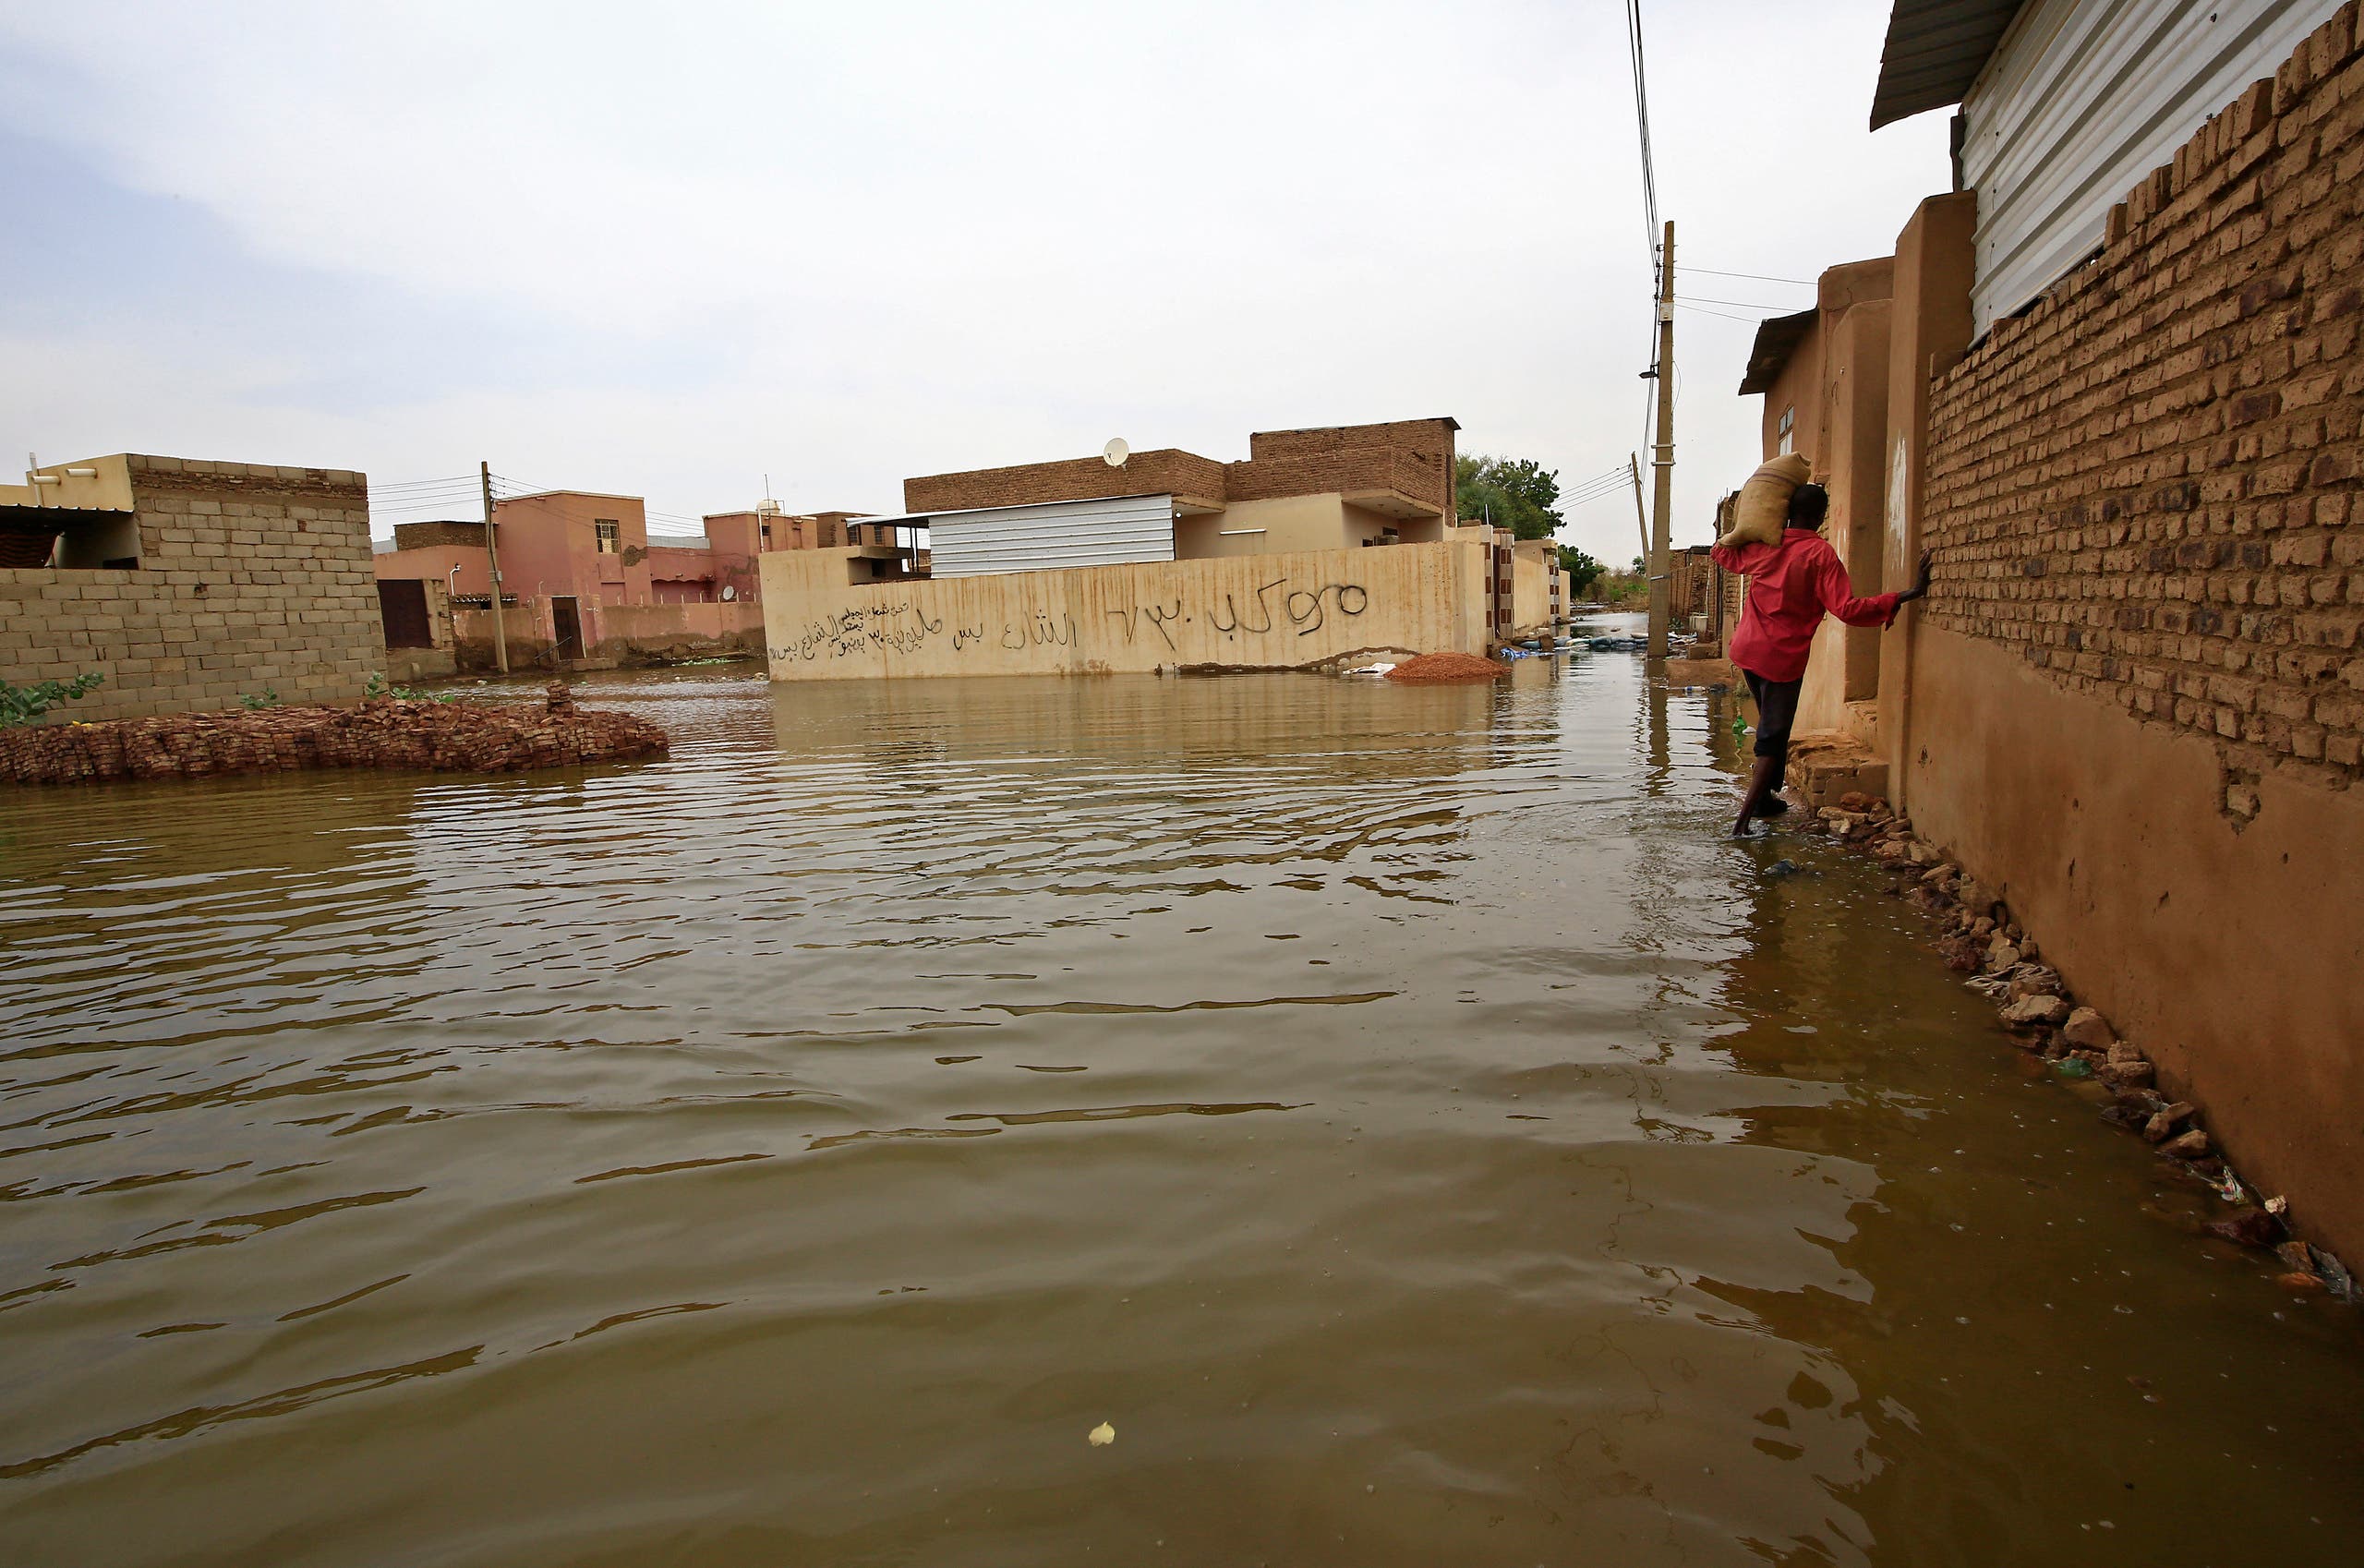 فيضان السودان يقضي على 120 منزل ووصل لمدينة جديدة بشكل استثنائي